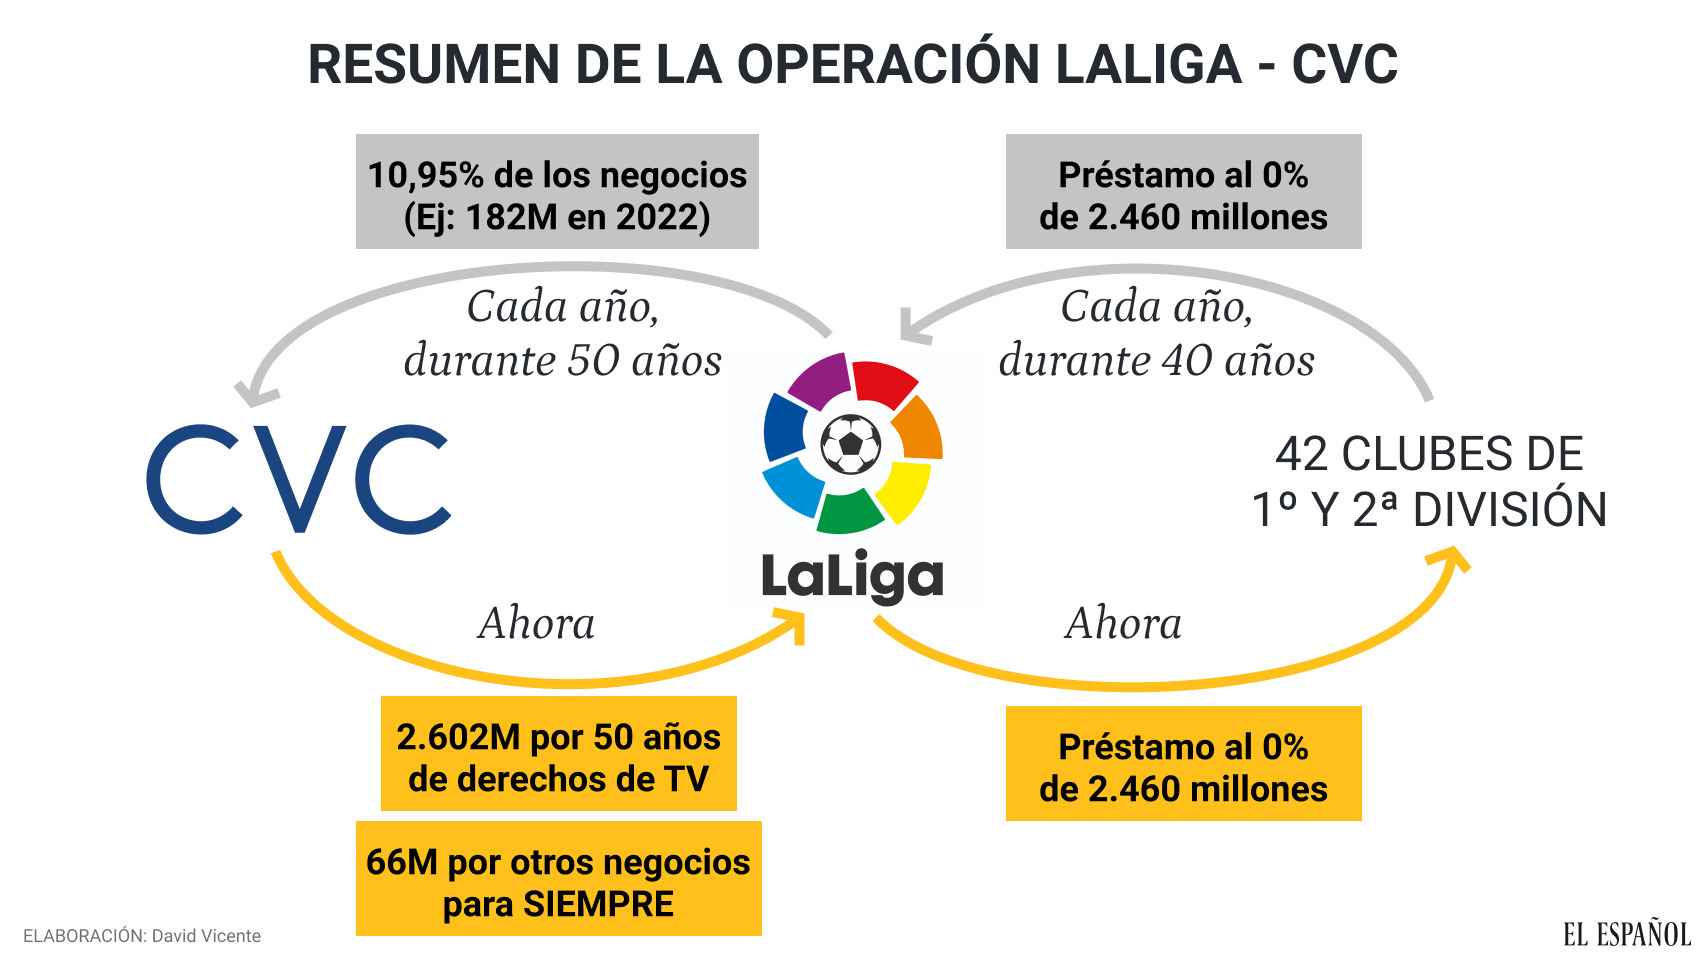 Resumen de la operación entre LaLiga y CVC